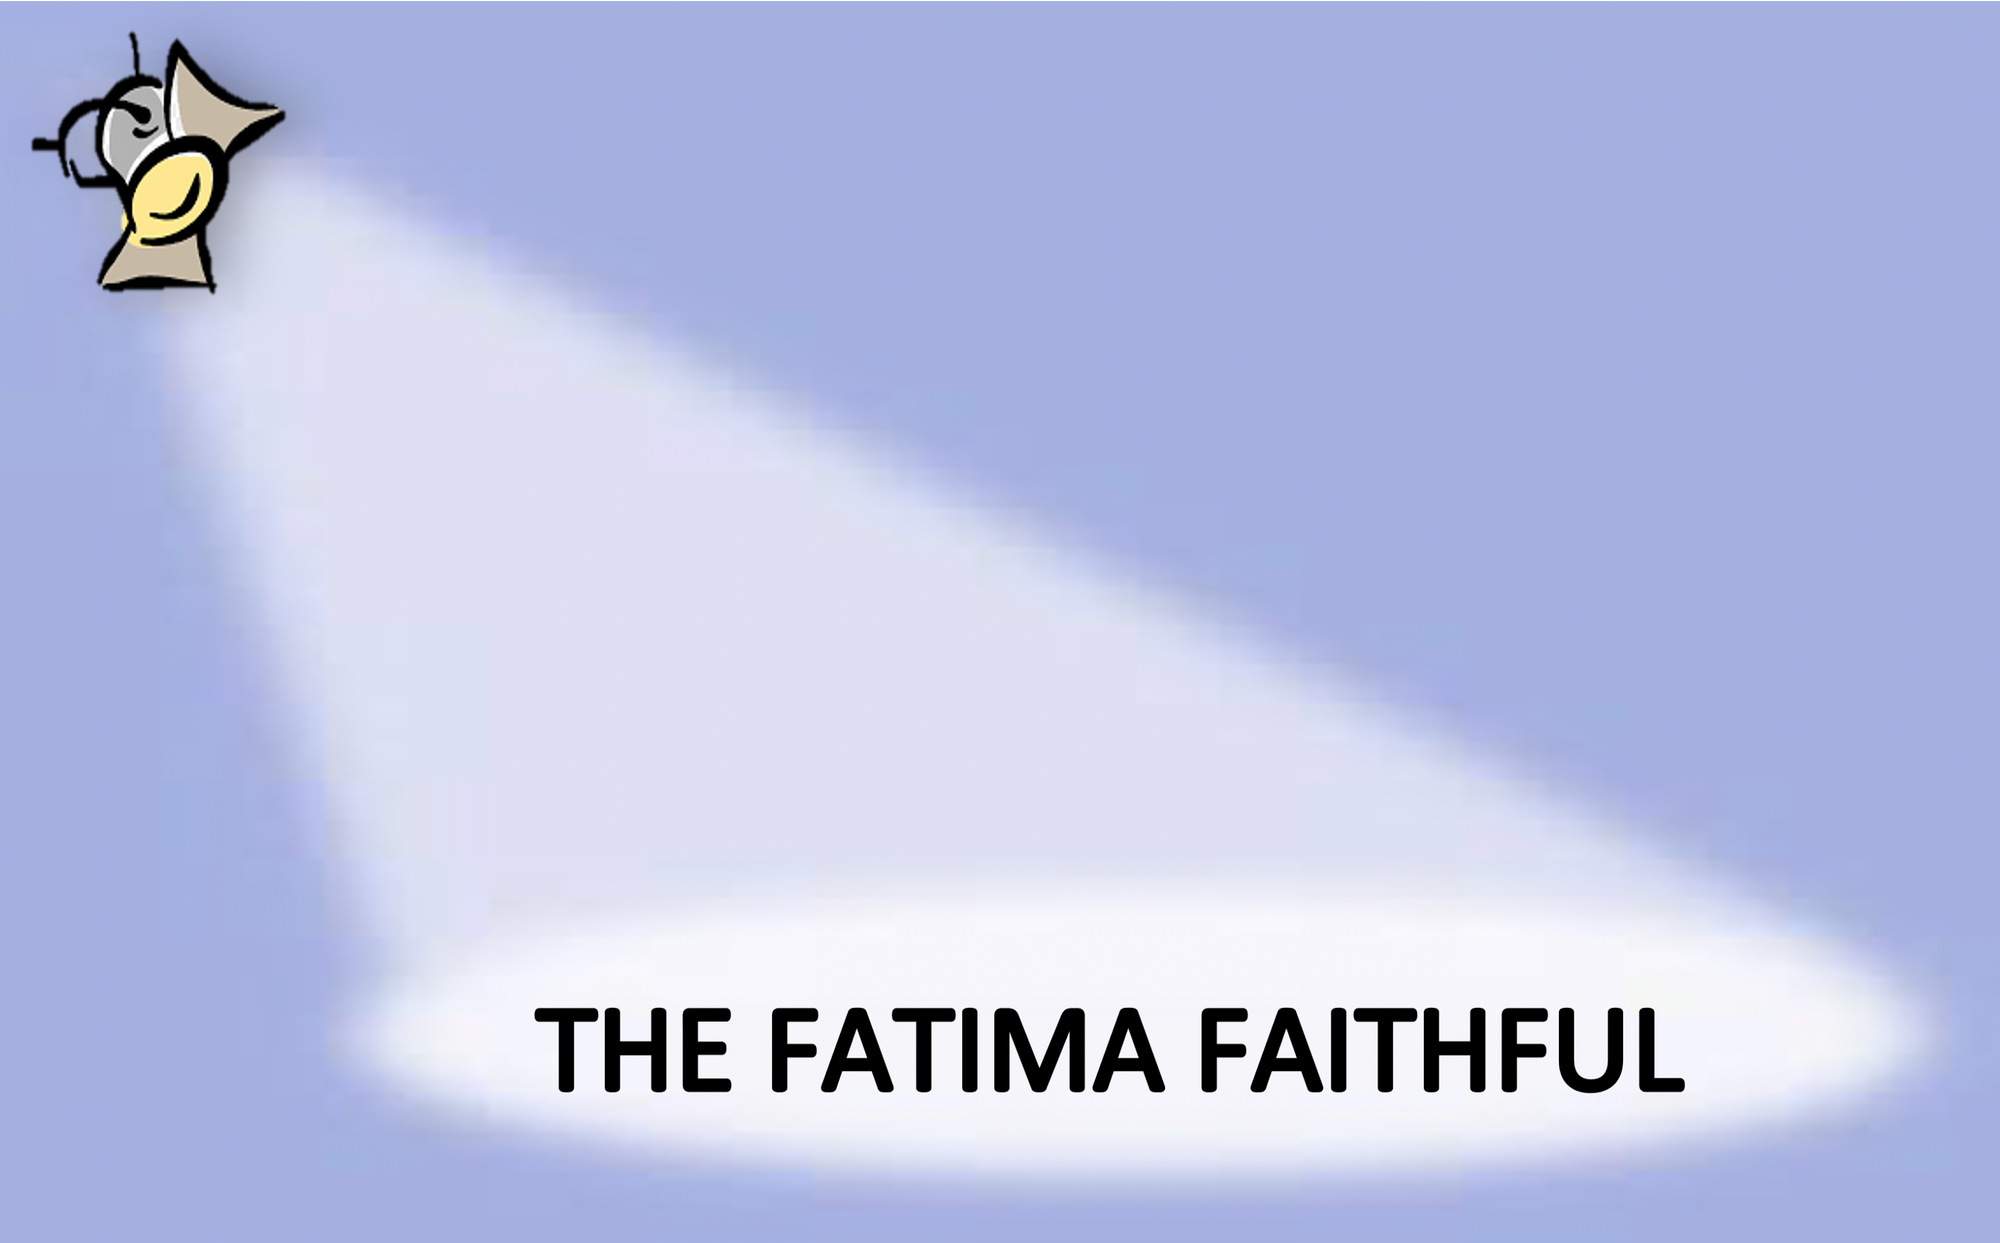 The Fatima Faithful for April 2021